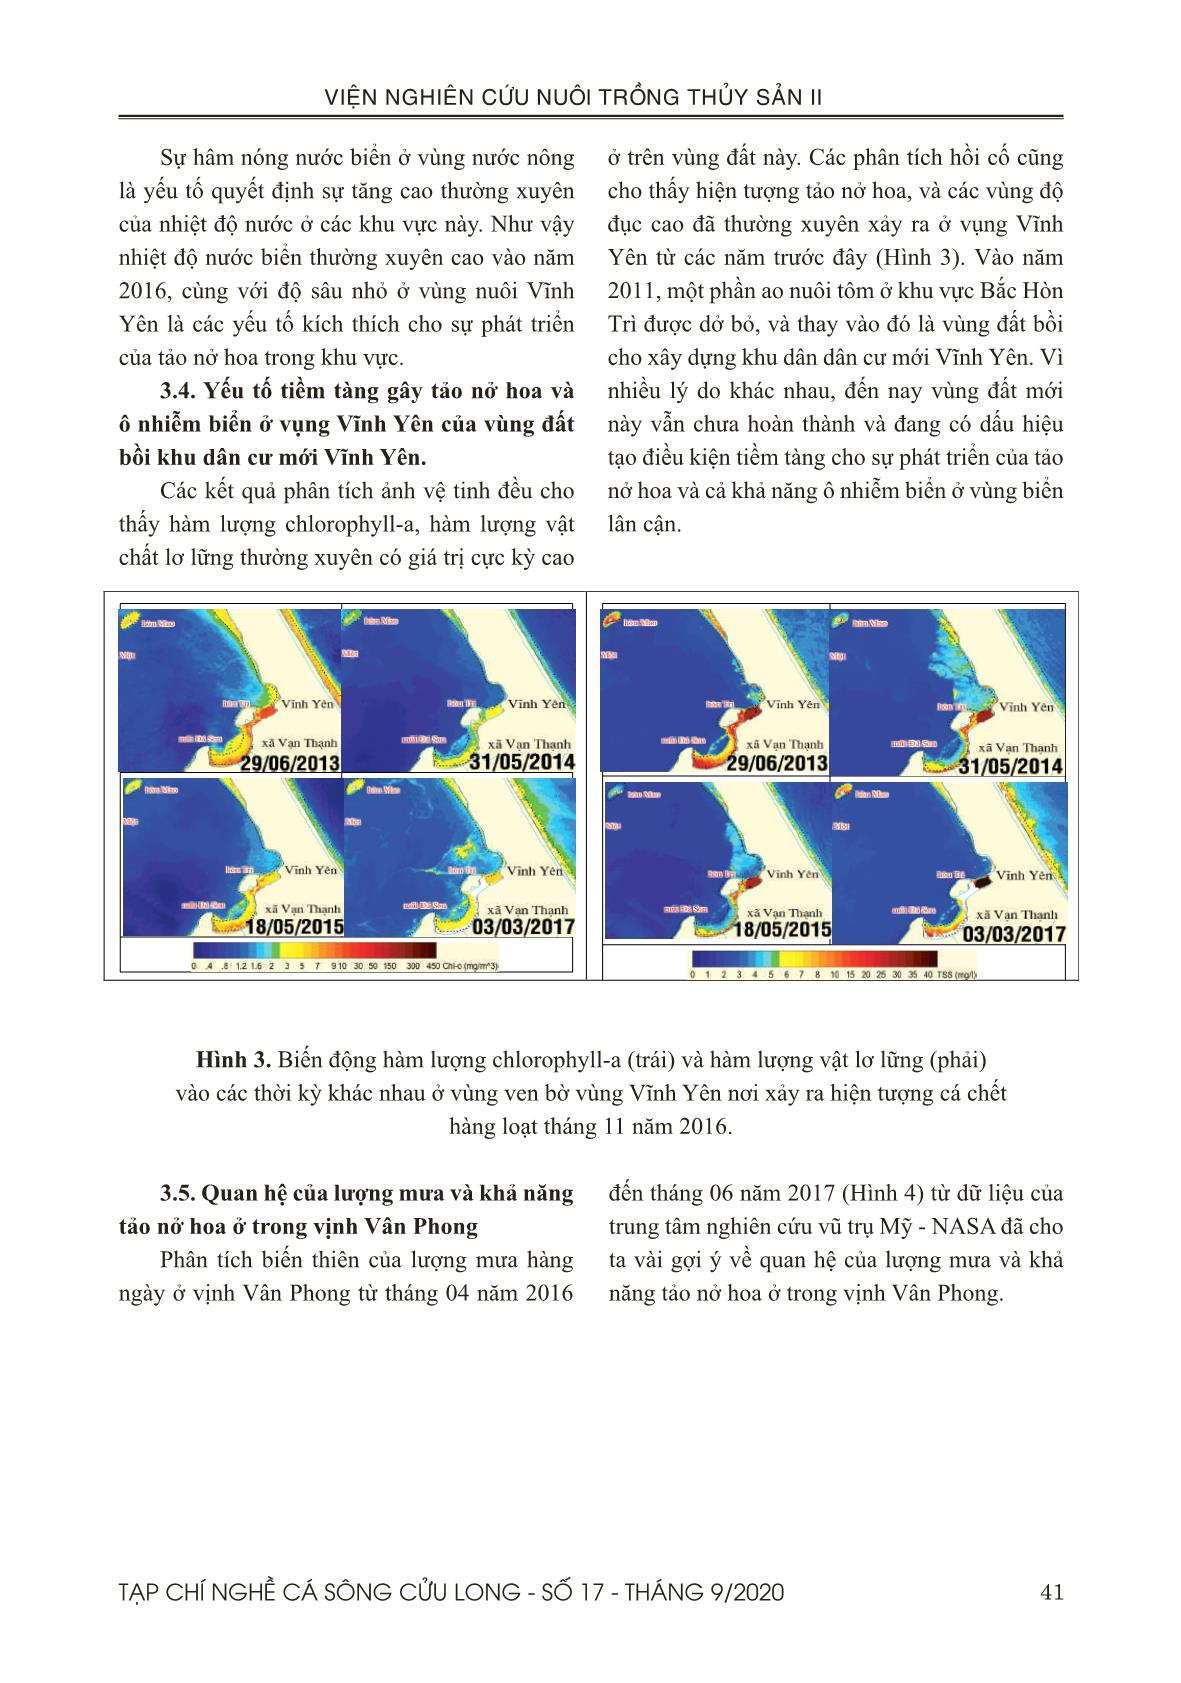 Môi trường nước vào thời điểm cá chết hàng loạt tháng 11 năm 2016 ở vịnh Vân Phong – Khánh Hòa dưới góc nhìn viễn thám trang 7